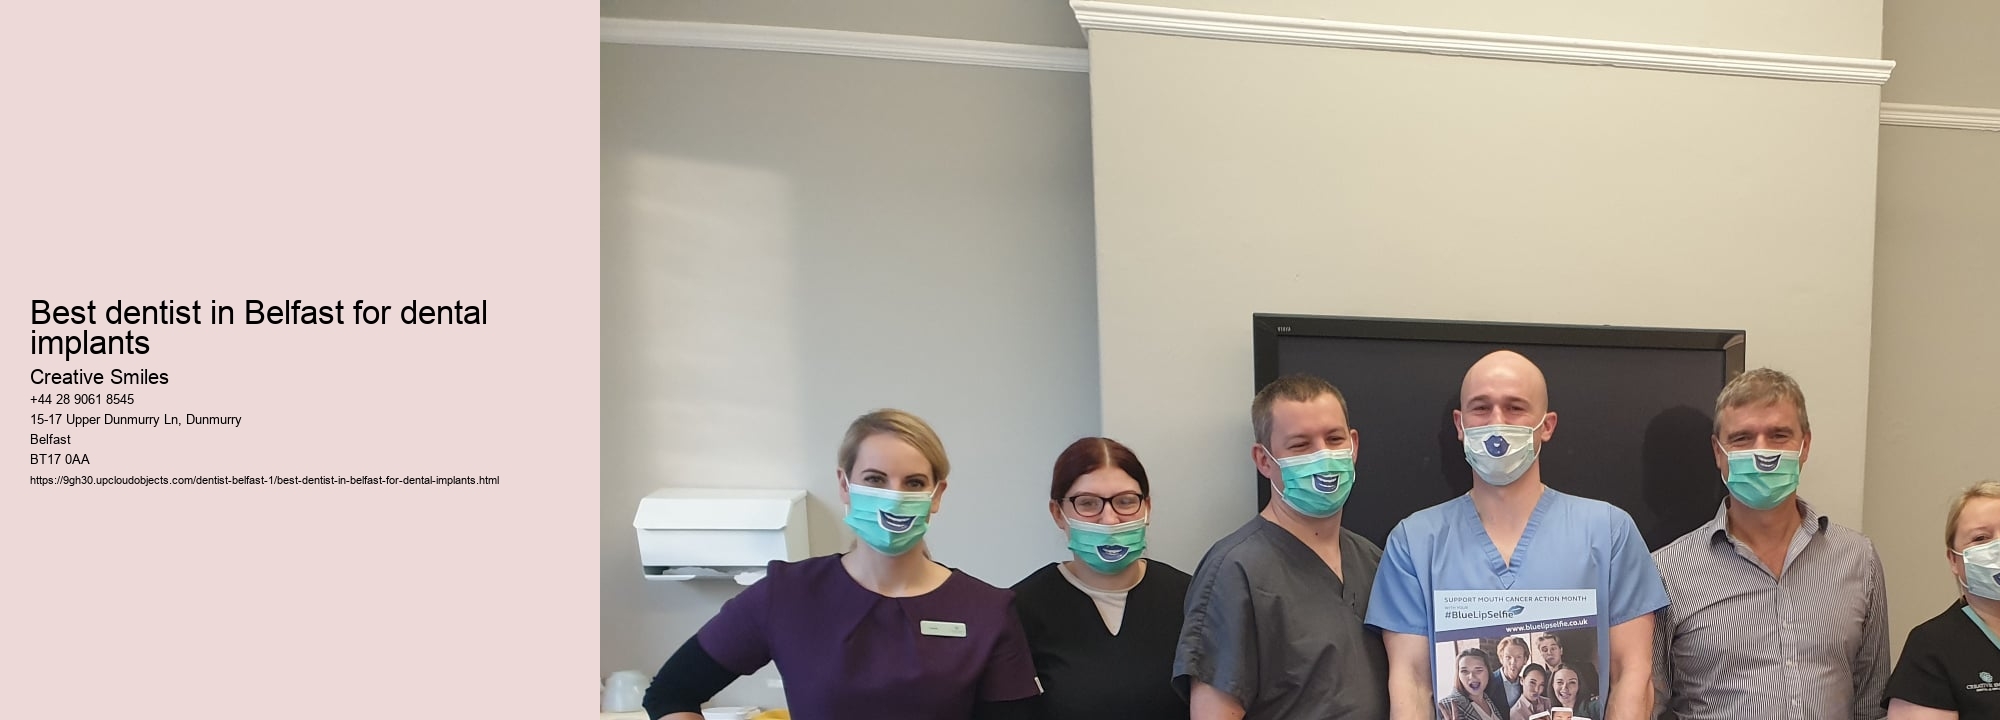 Best dentist in Belfast for dental implants